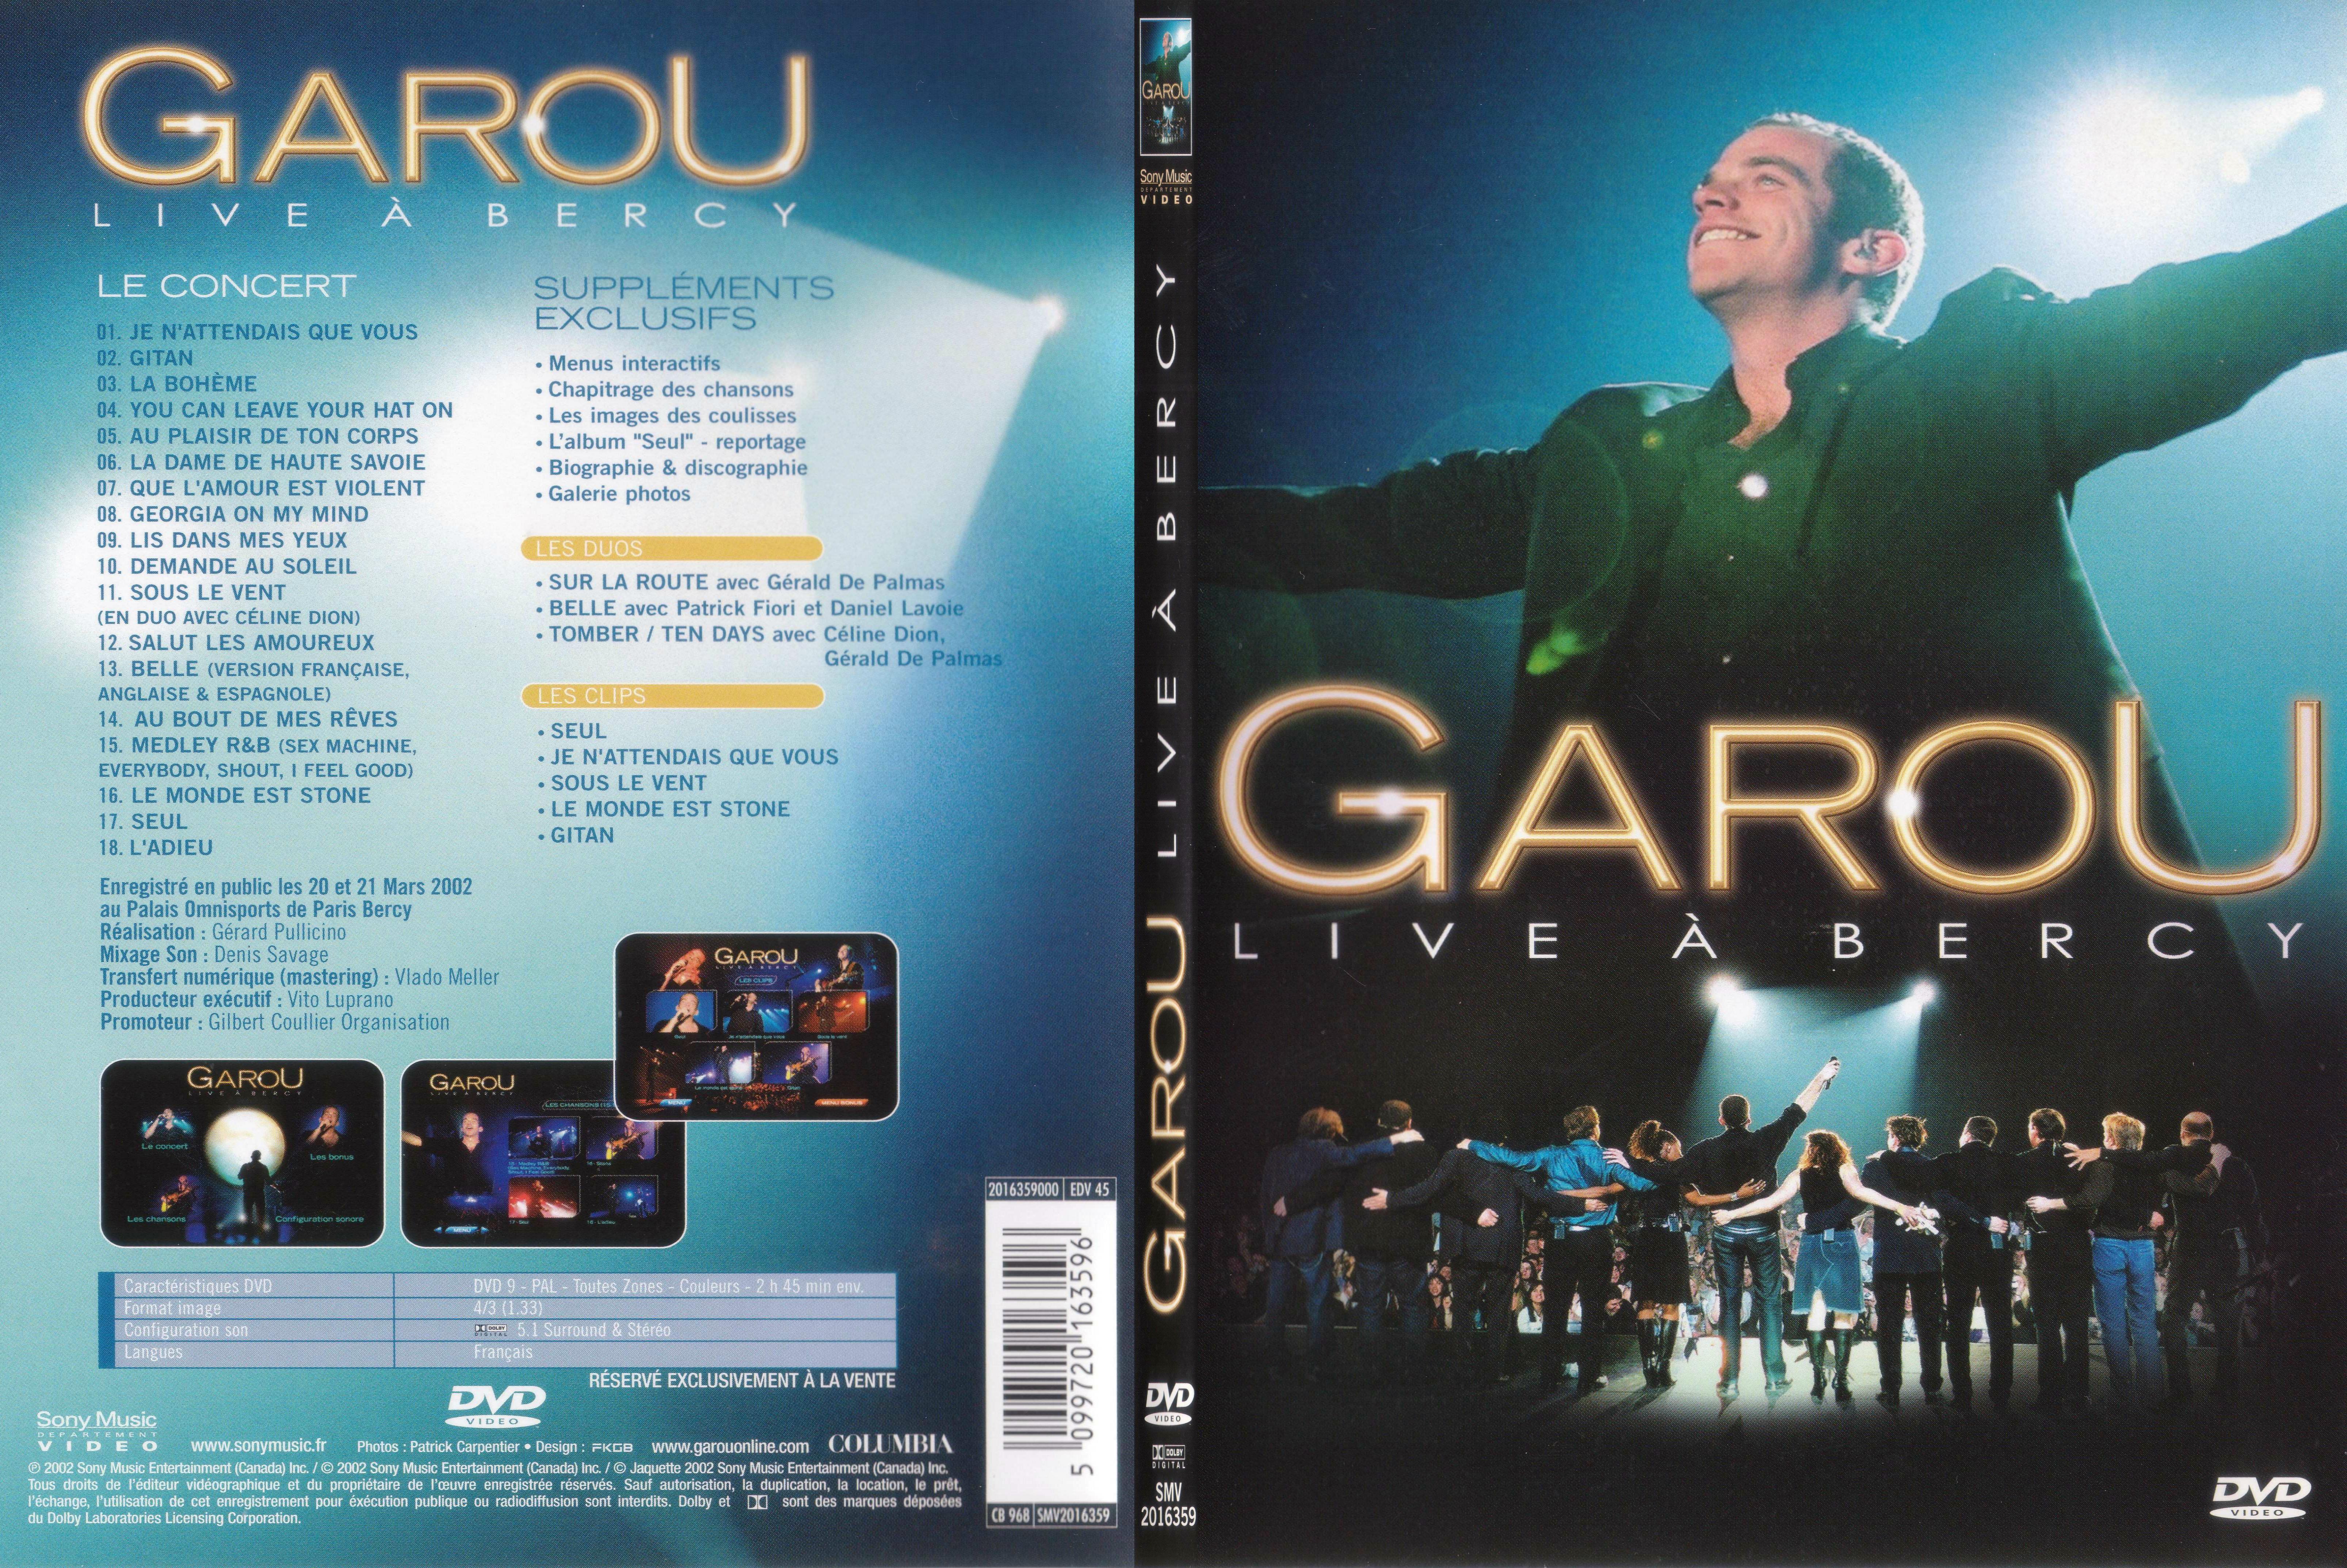 Jaquette DVD Garou live a bercy - SLIM